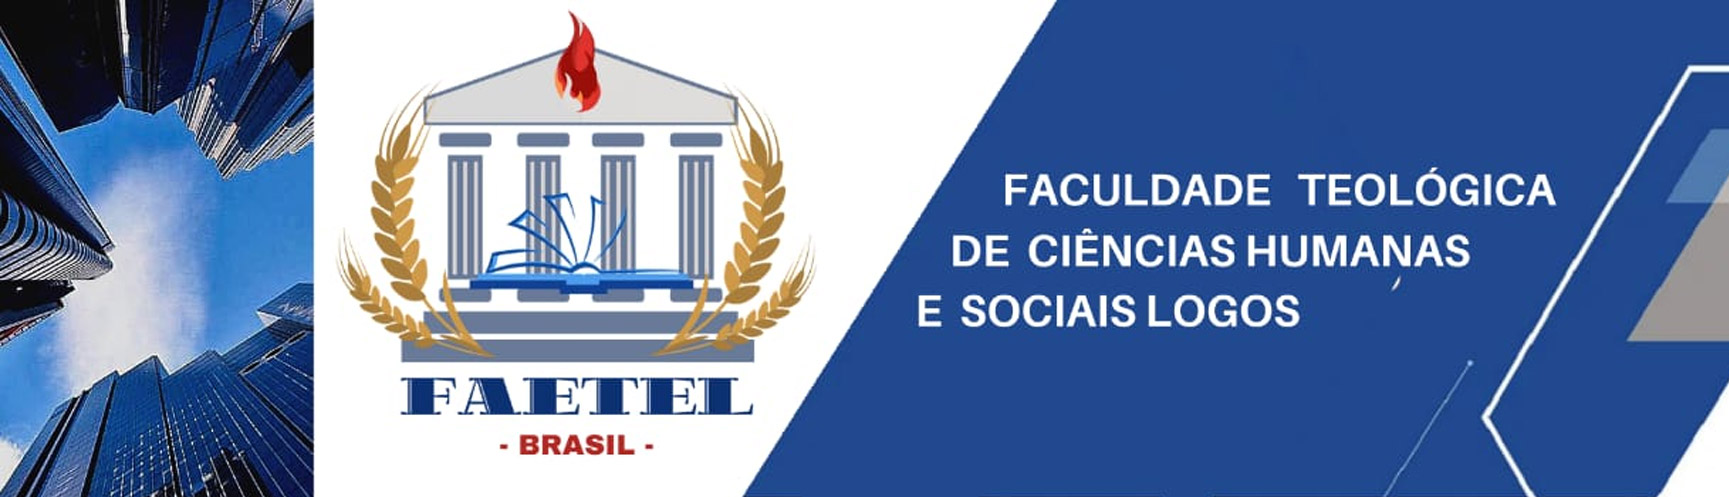 Faculdade Teológica de Ciências Humanas e Sociais Logos